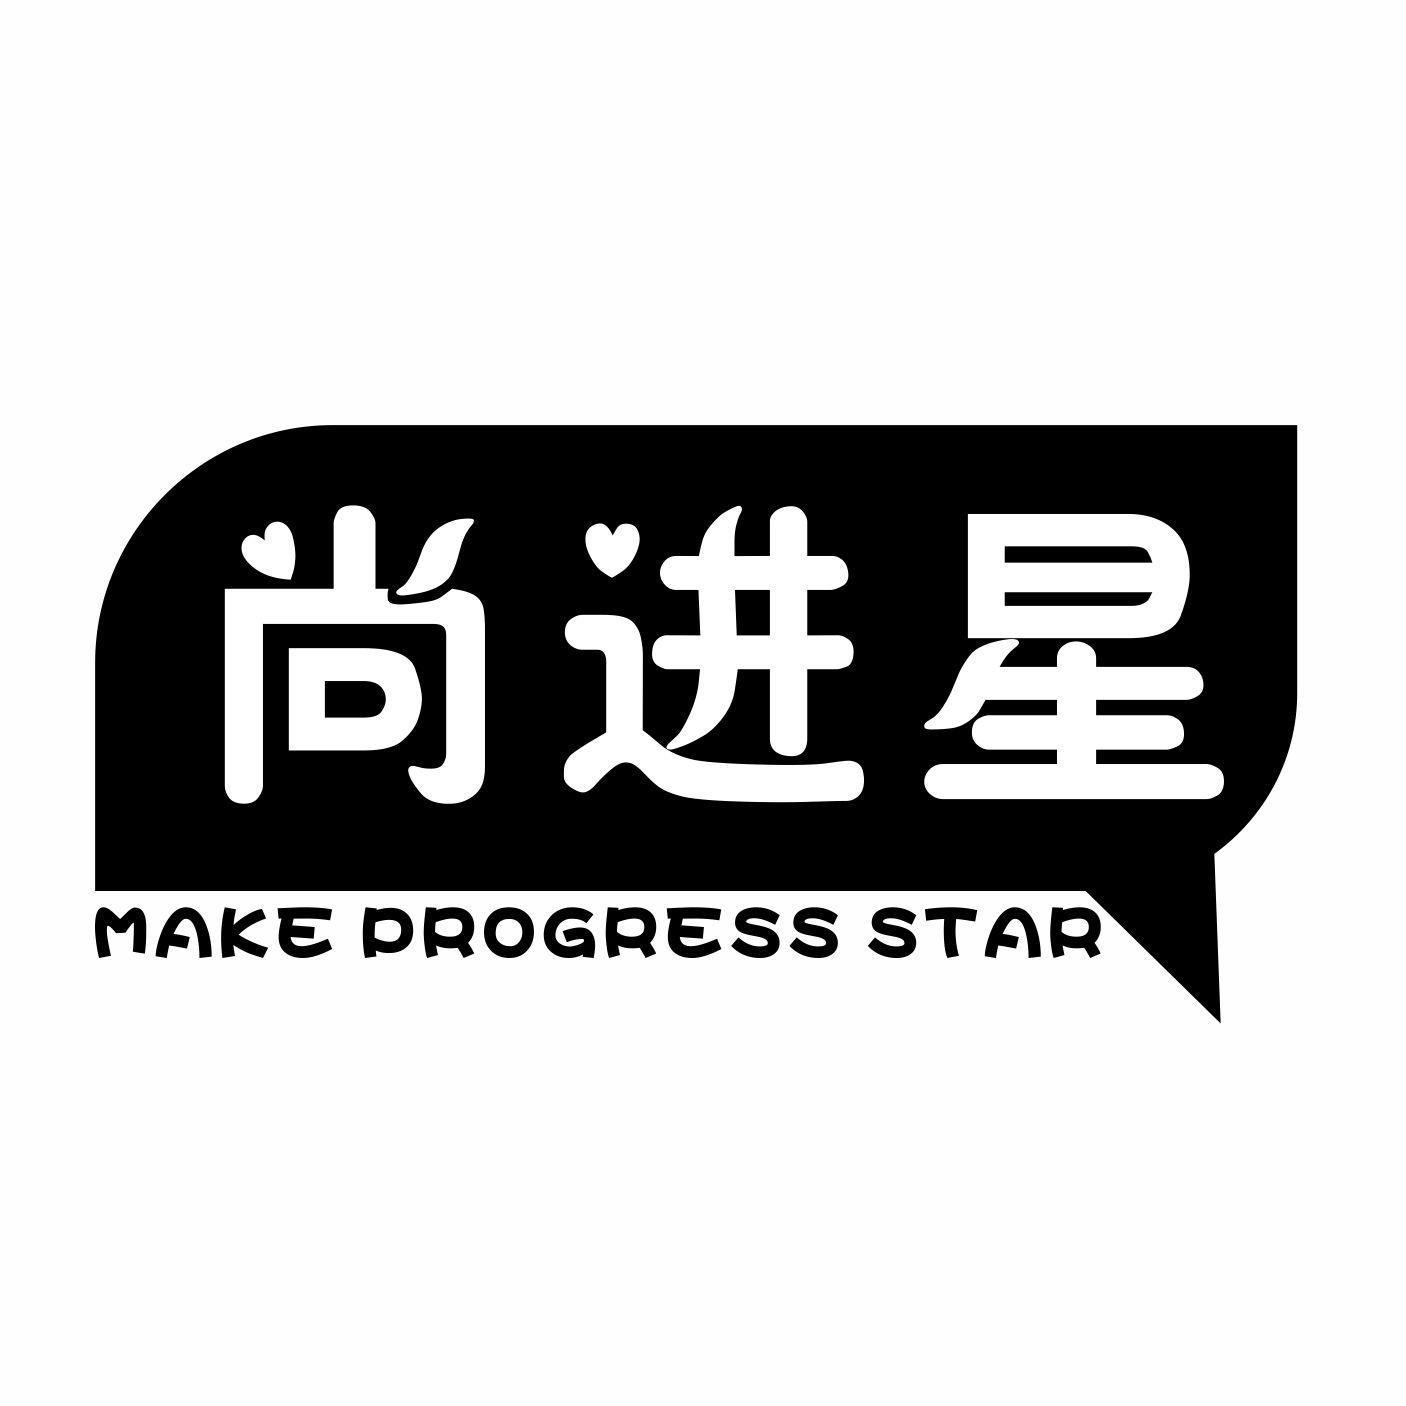 09类-科学仪器尚进星 MAKE PROGRESS STAR商标转让